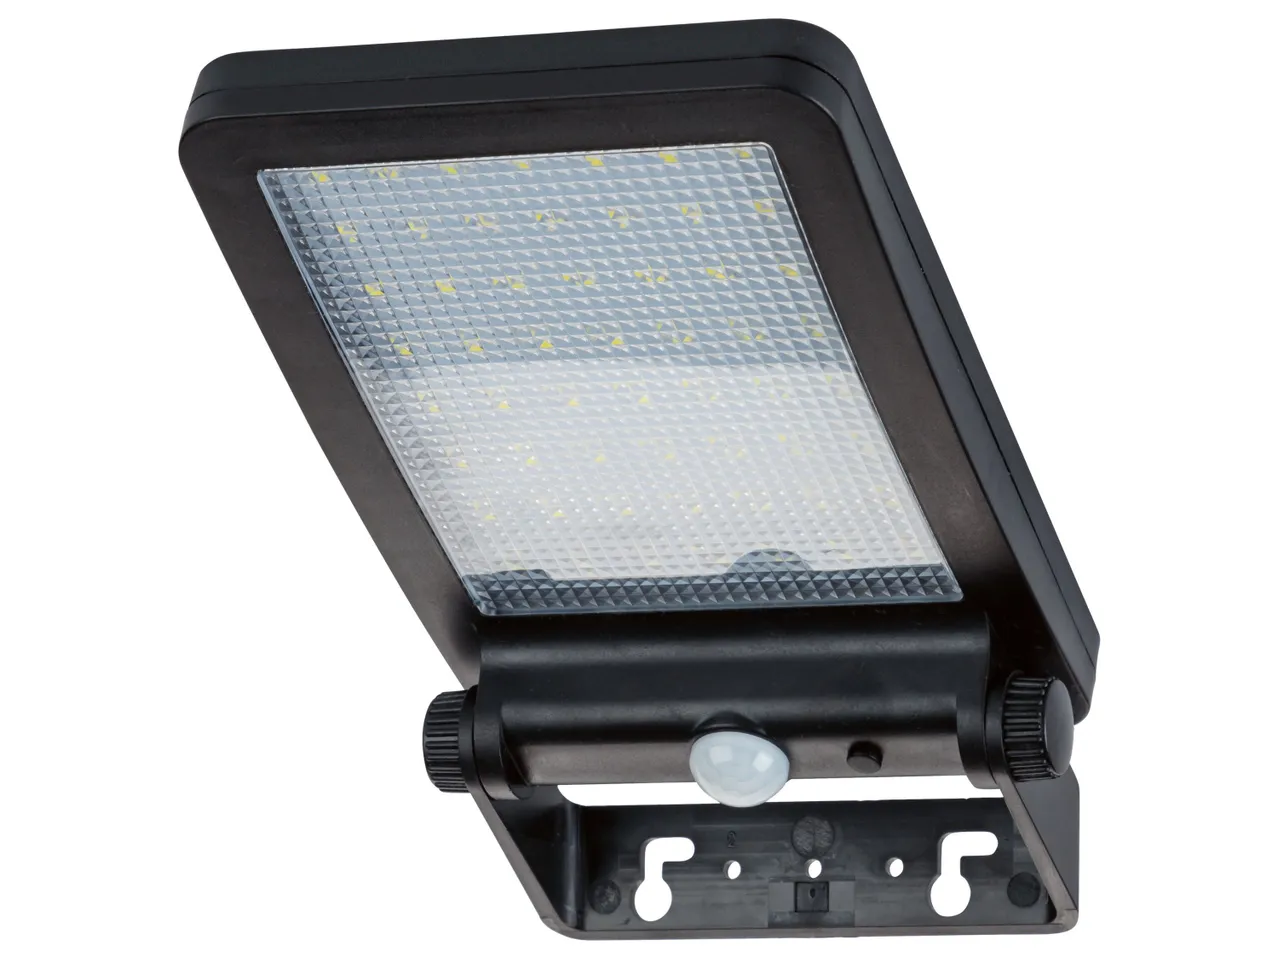 LIVARNO home Refl ektor solarny LED z czujnikiem , cena 49,99 PLN 
LIVARNO home ...